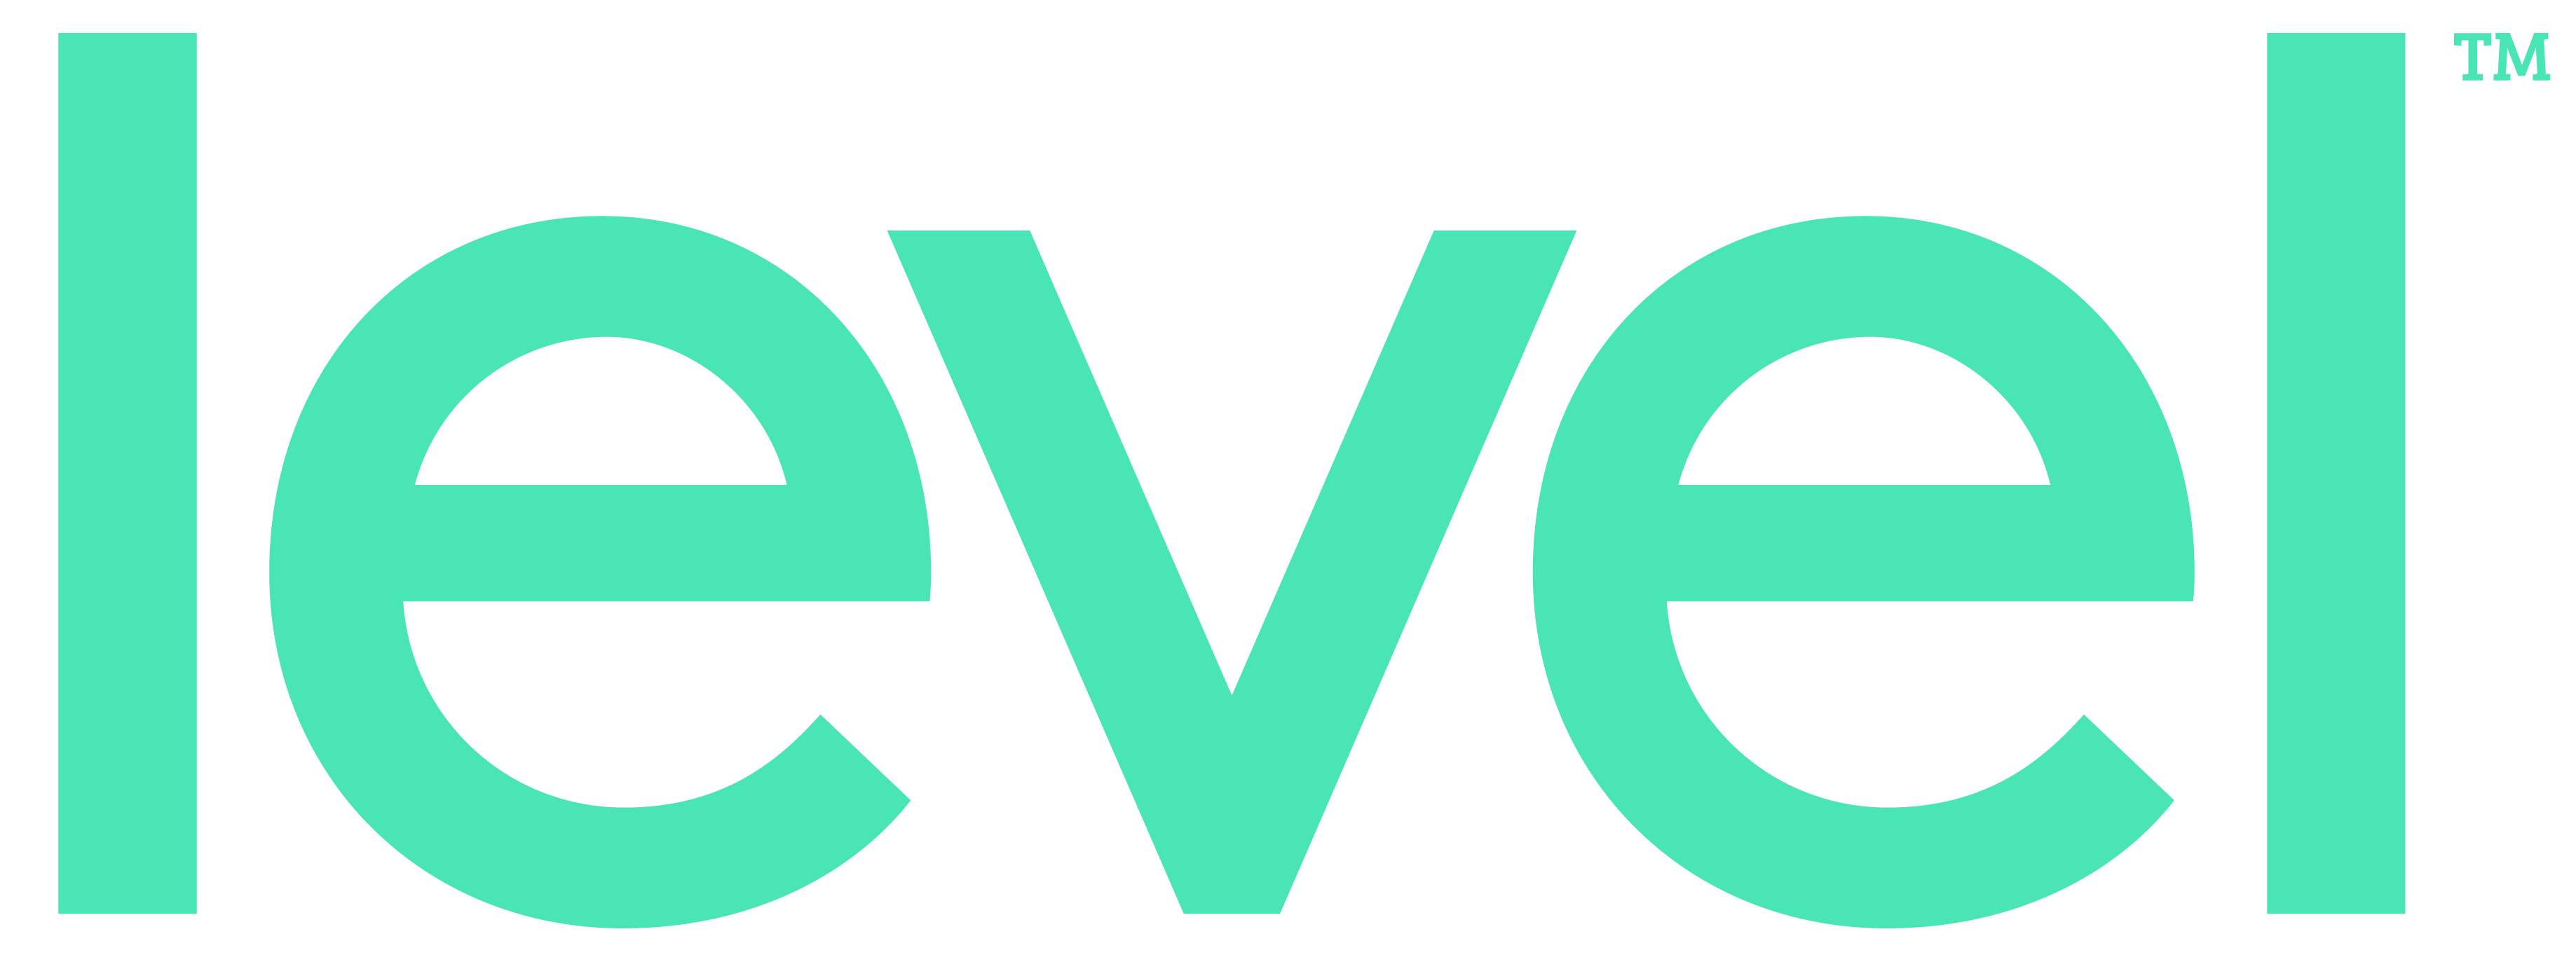 Level Logo - Level